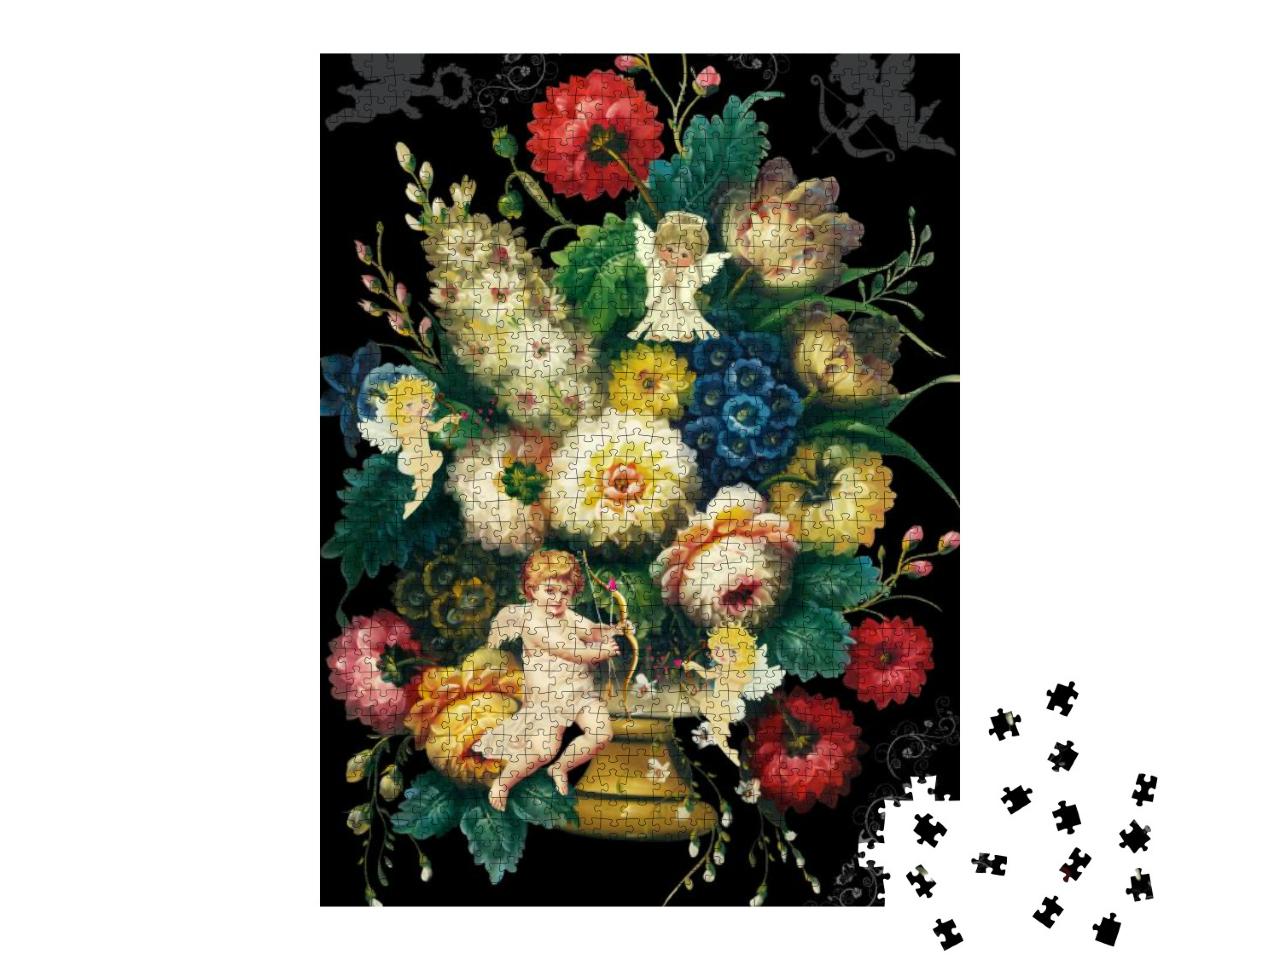 Puzzle 1000 Teile „Blumen und Vögel in der Renaissance“